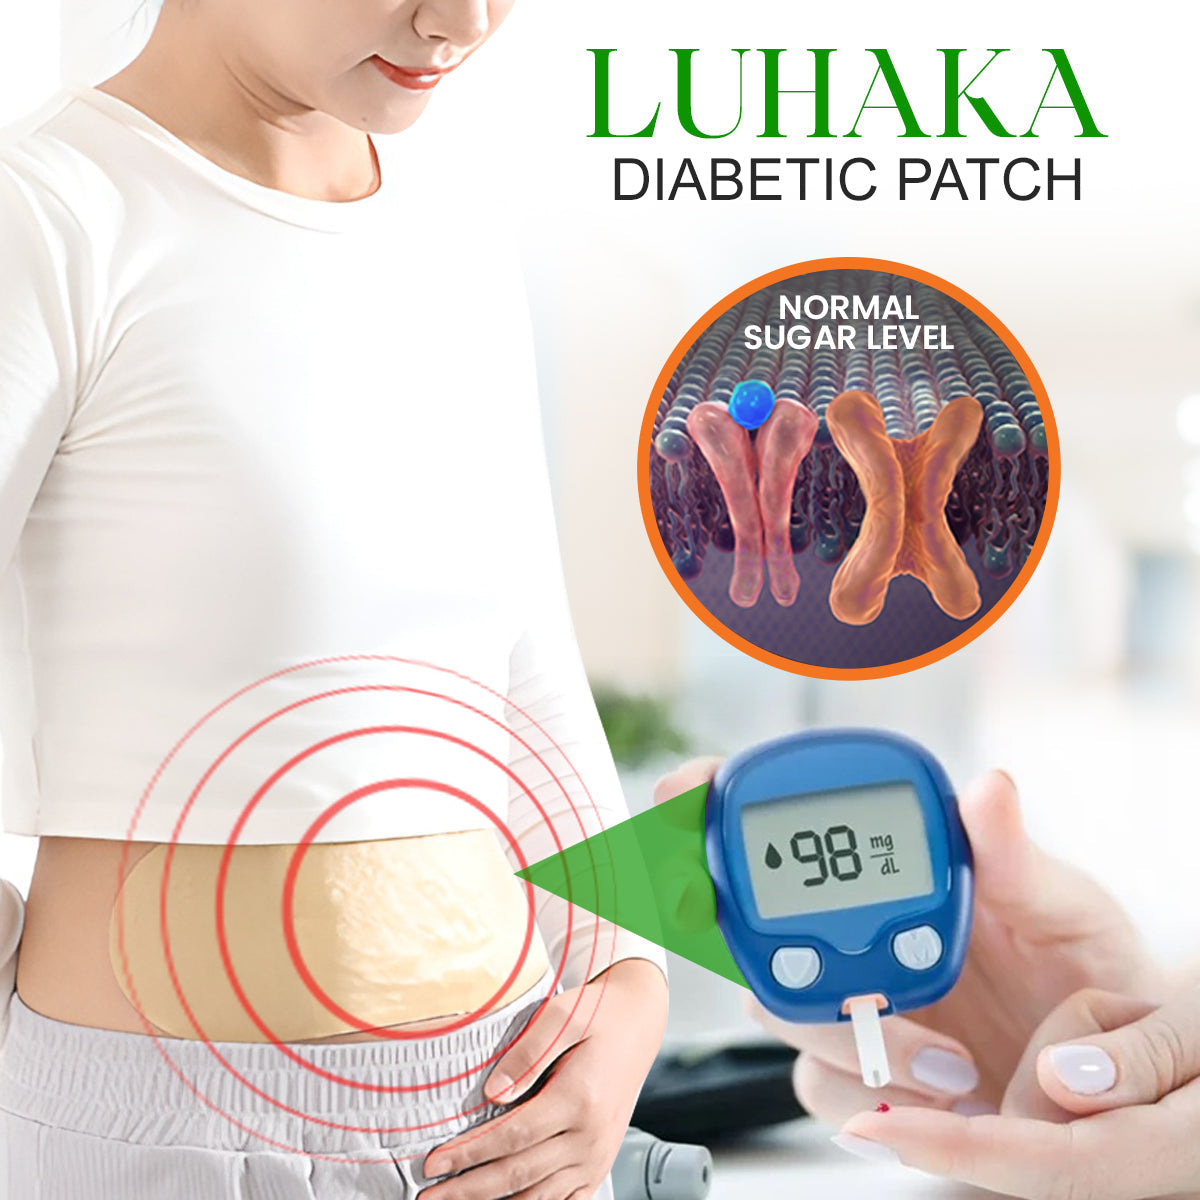 Luhaka Diabetic Patch